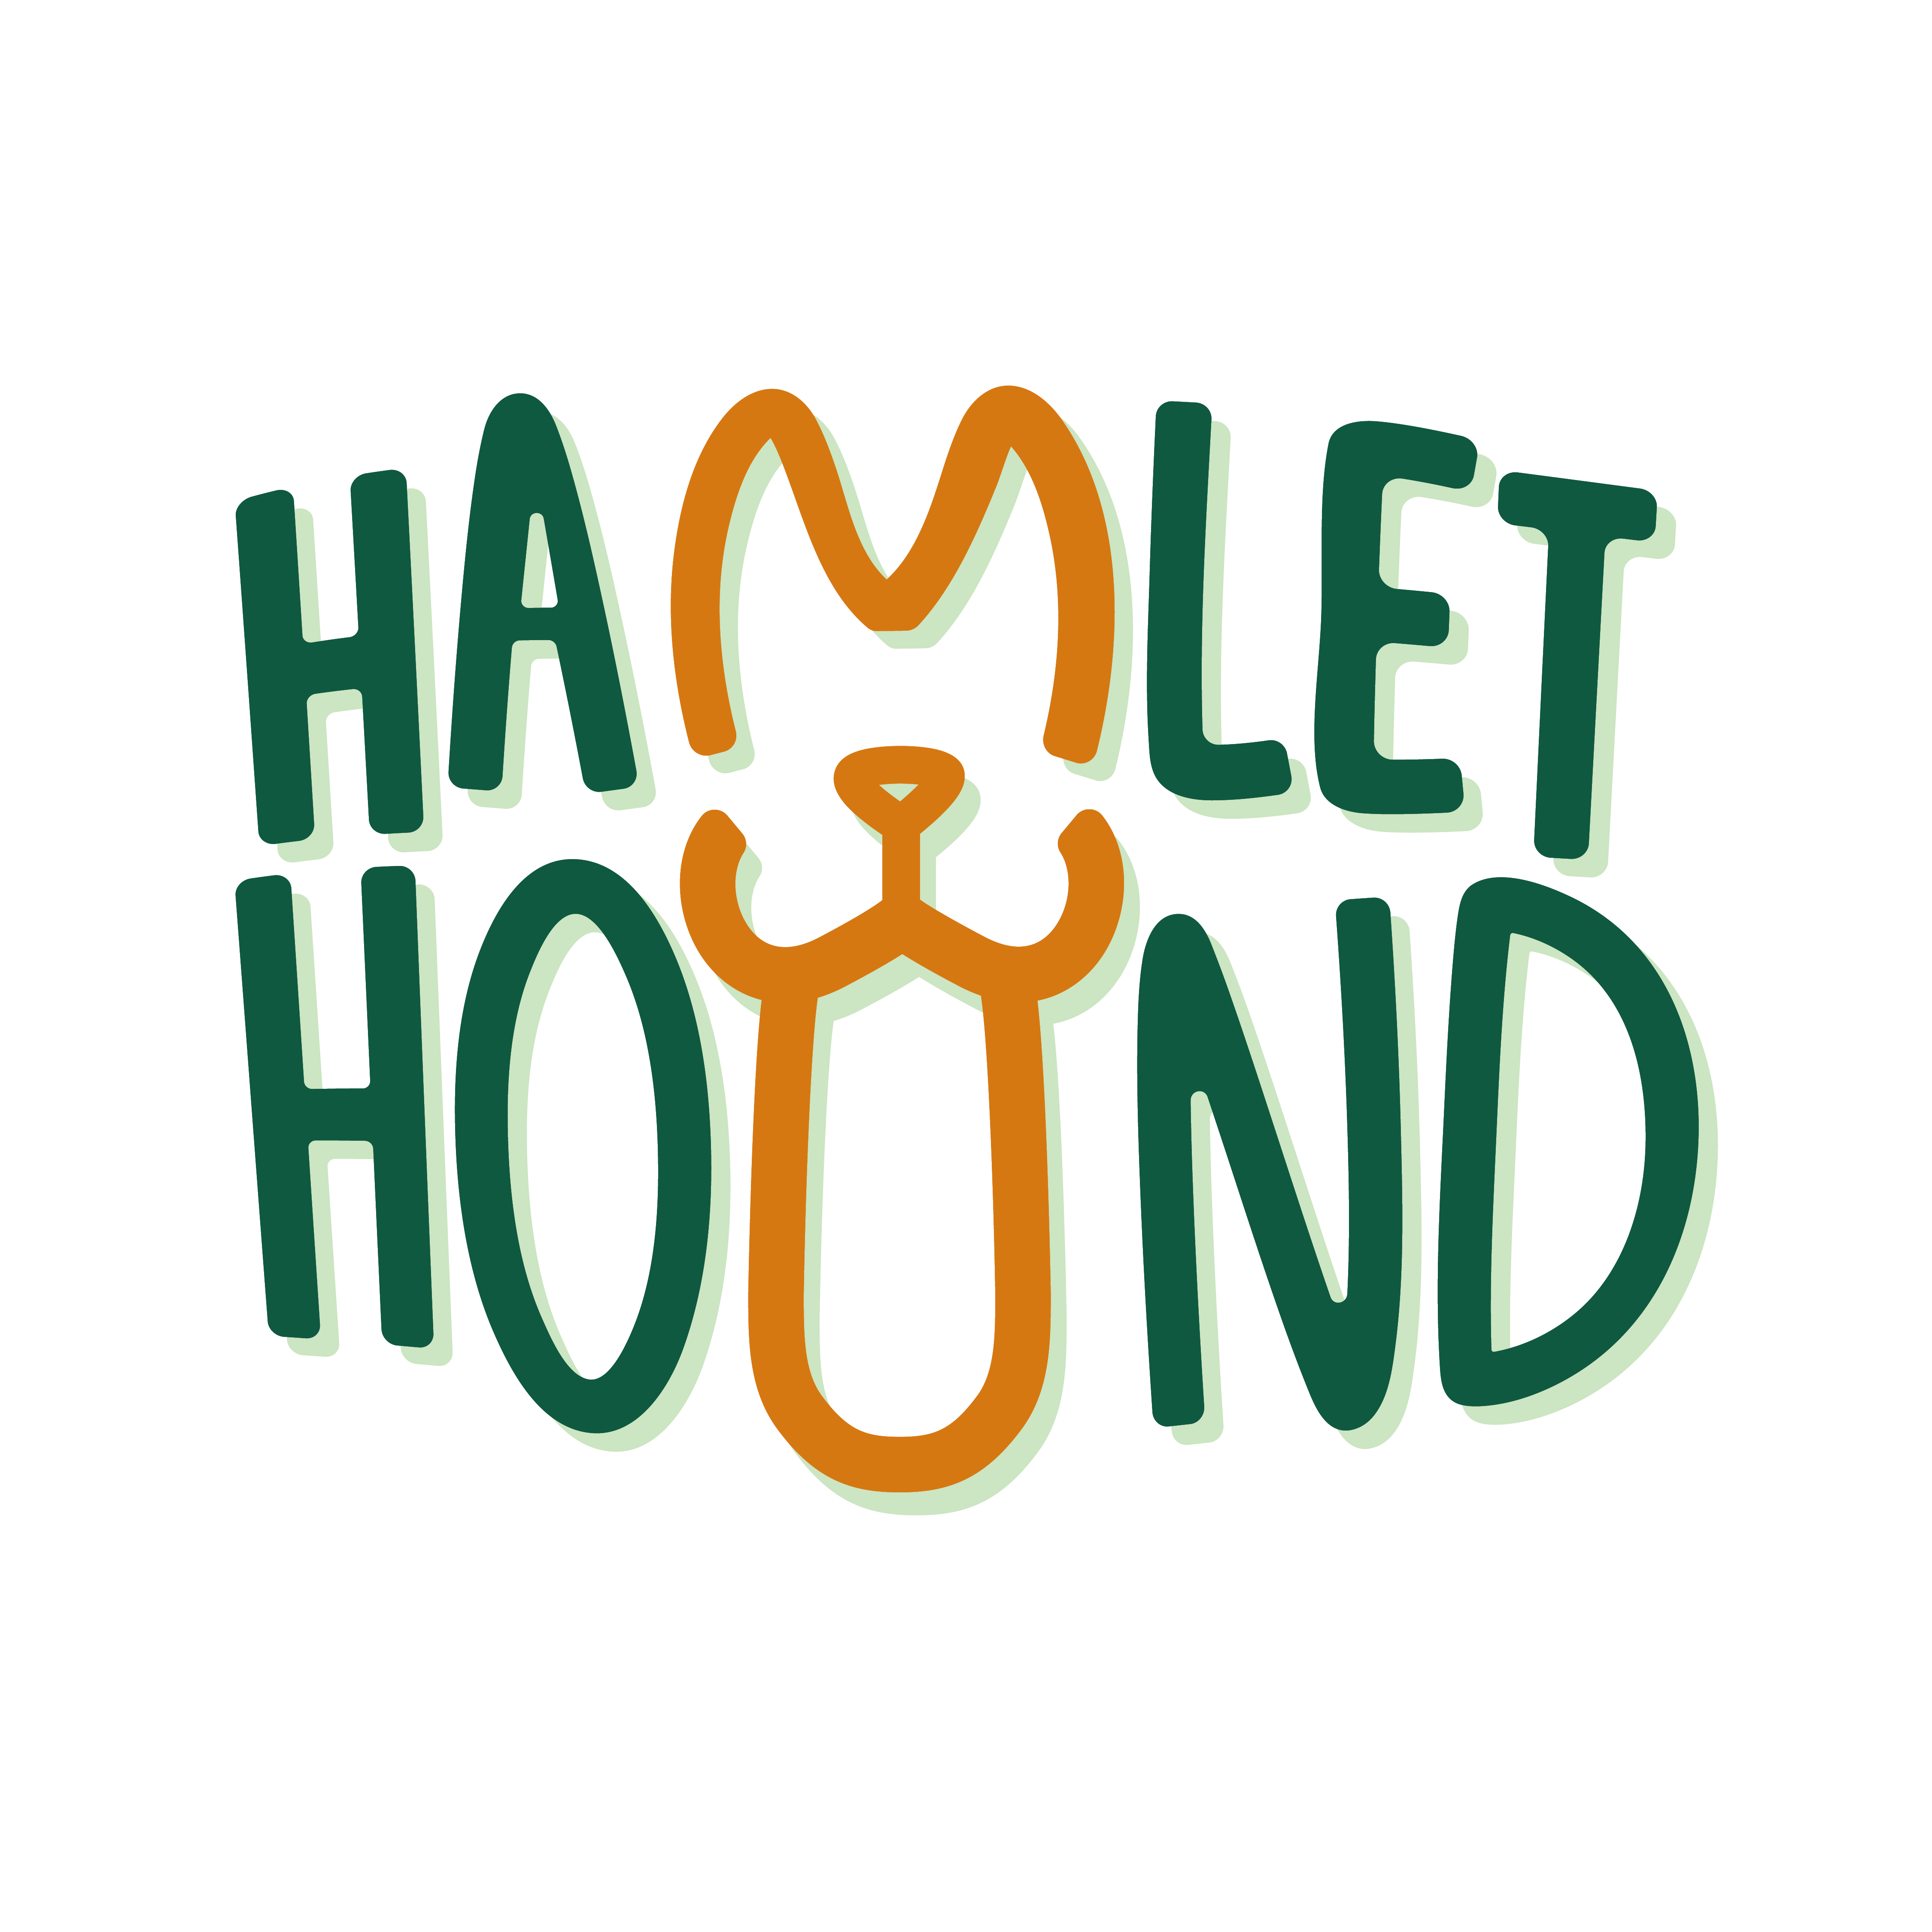 Hamlet Hound Cocktails